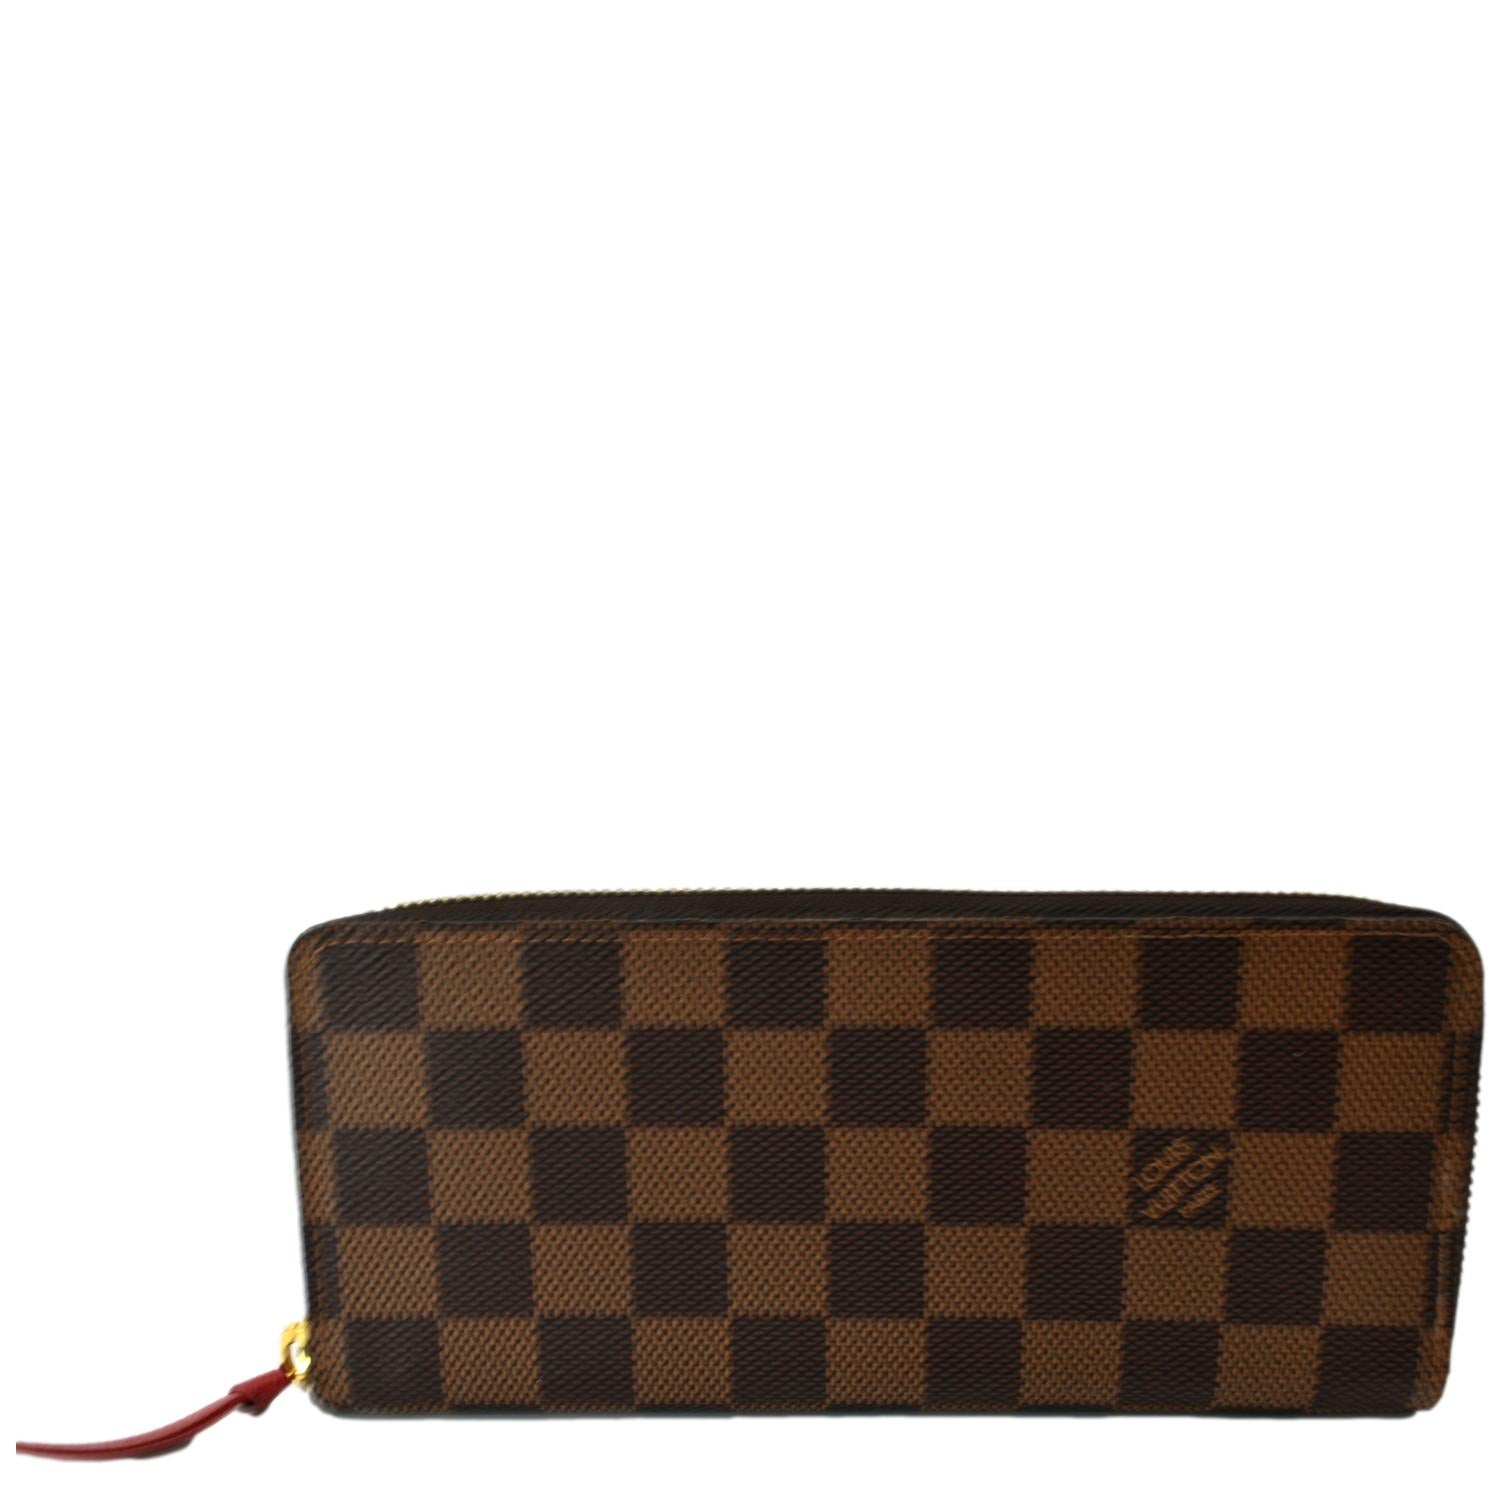 LV Louis Vuitton Damier style men's wallet checker pattern  black/graphite